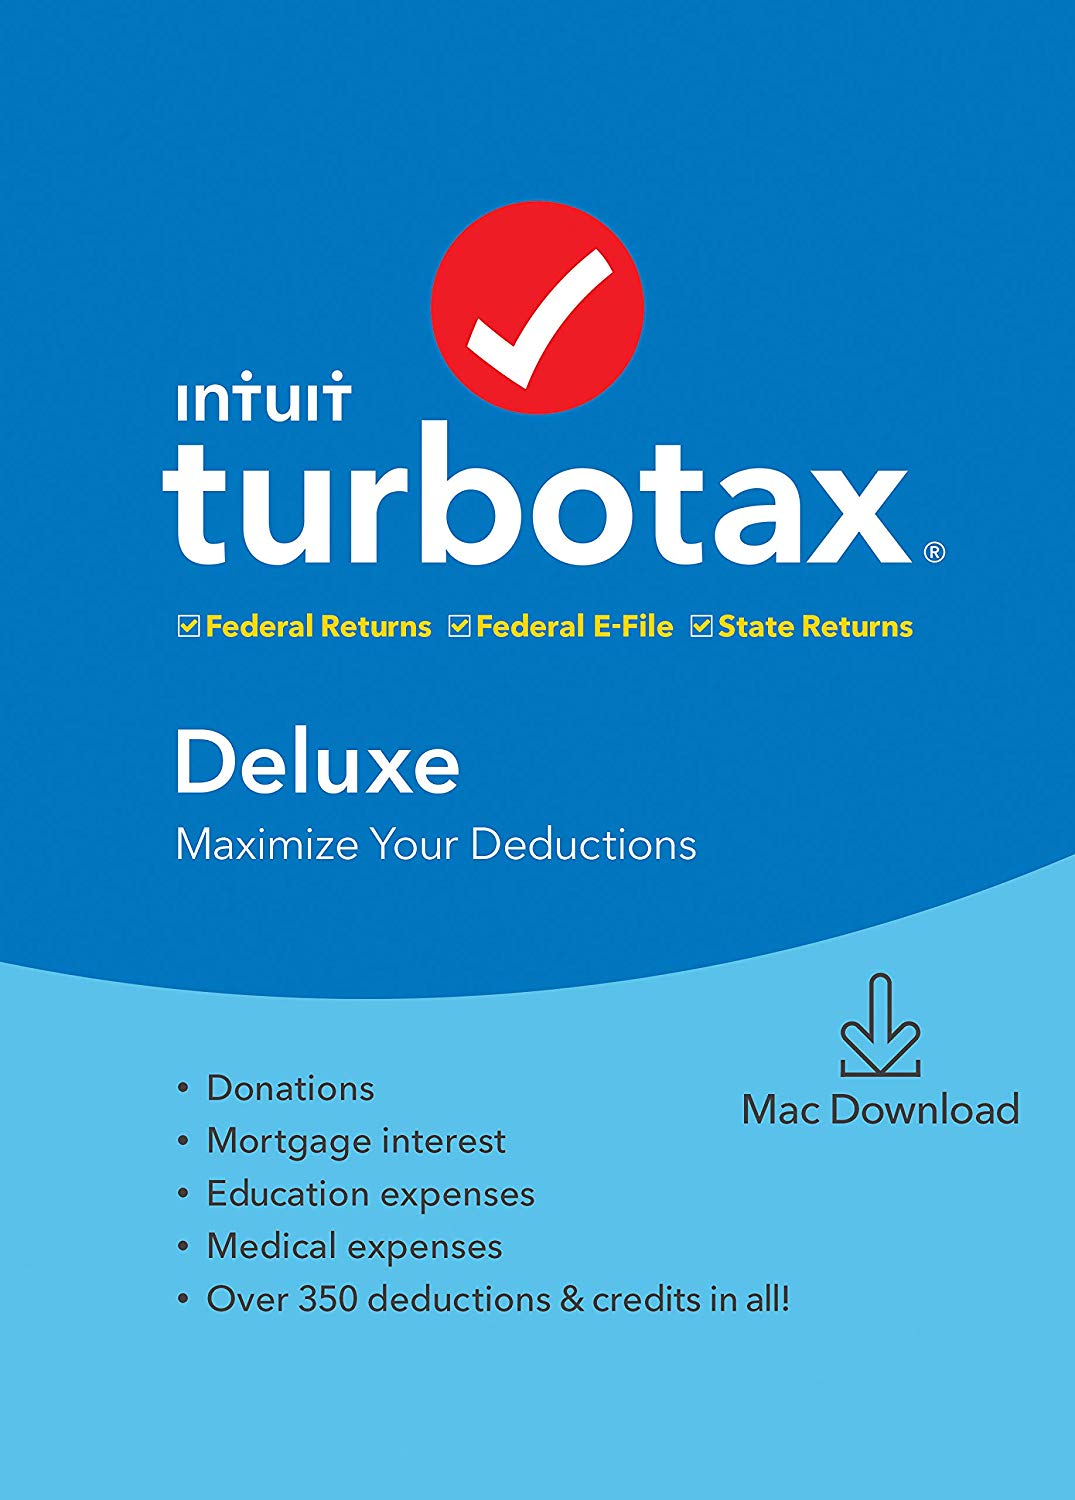 turbotax discount code vanguard